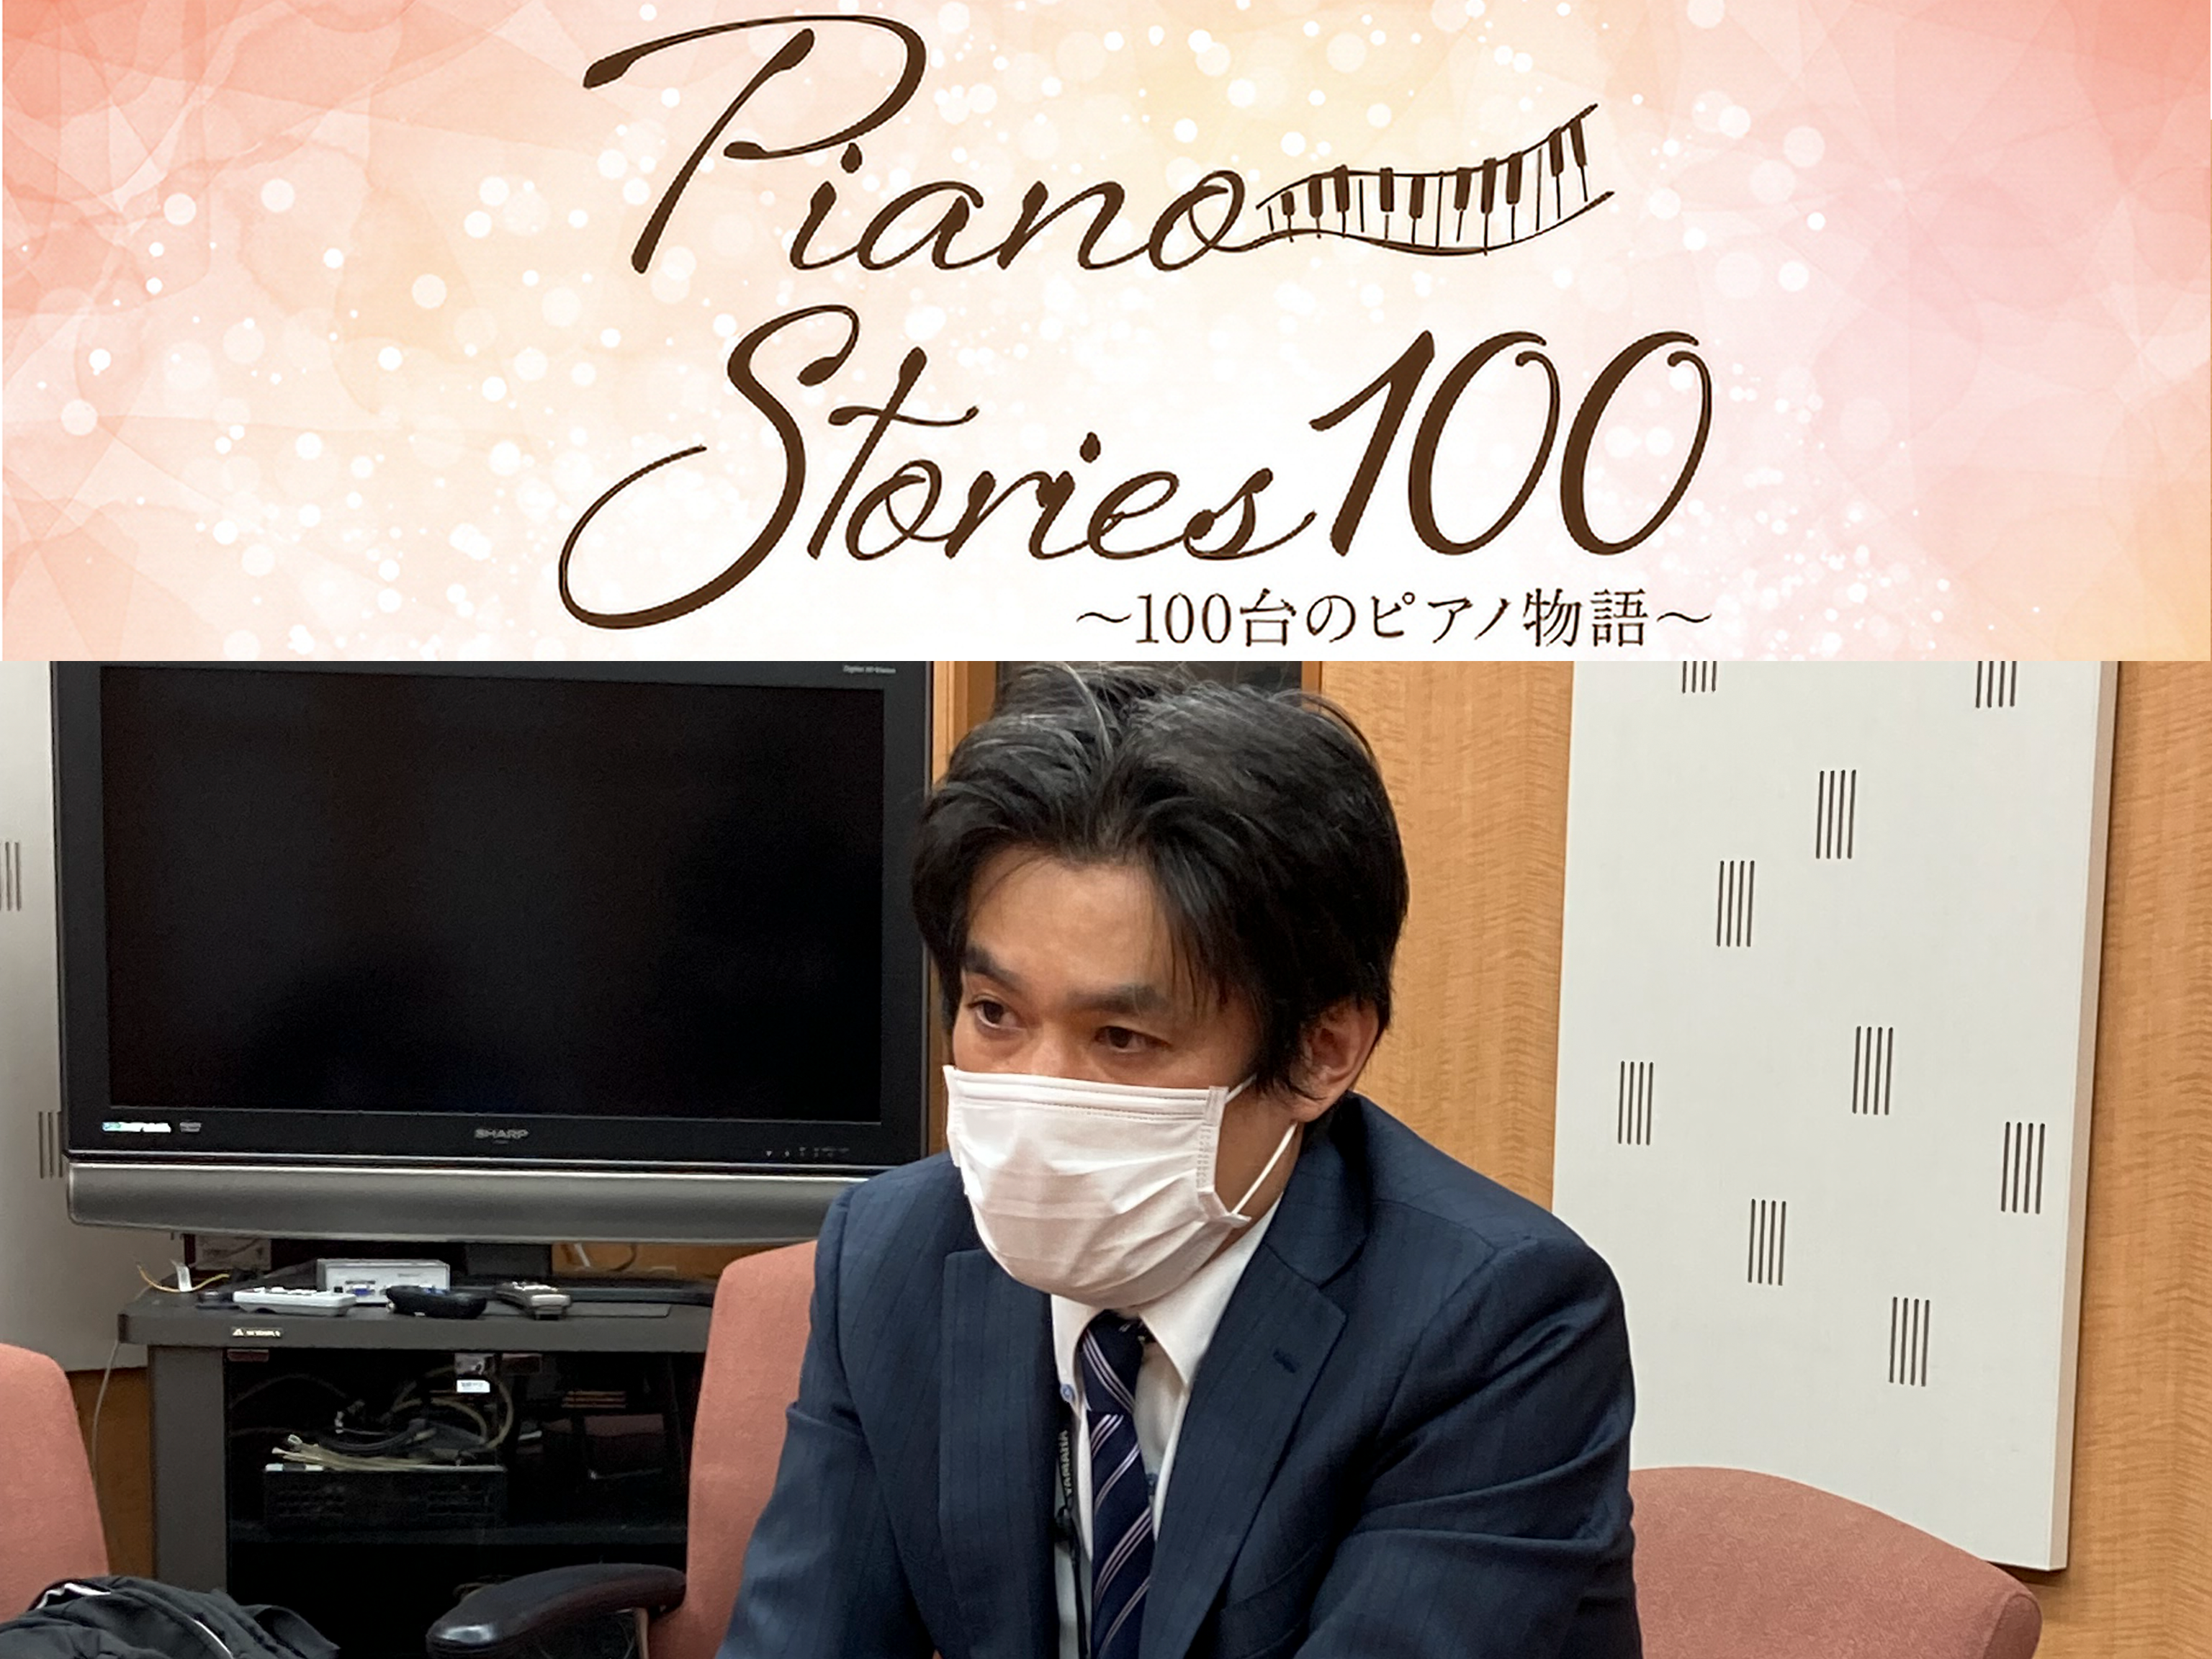 Piano Stories 100 ～100台のピアノ物語～<br>ピアノに新たな息吹をつなぐ人たちへのスペシャルインタビュー